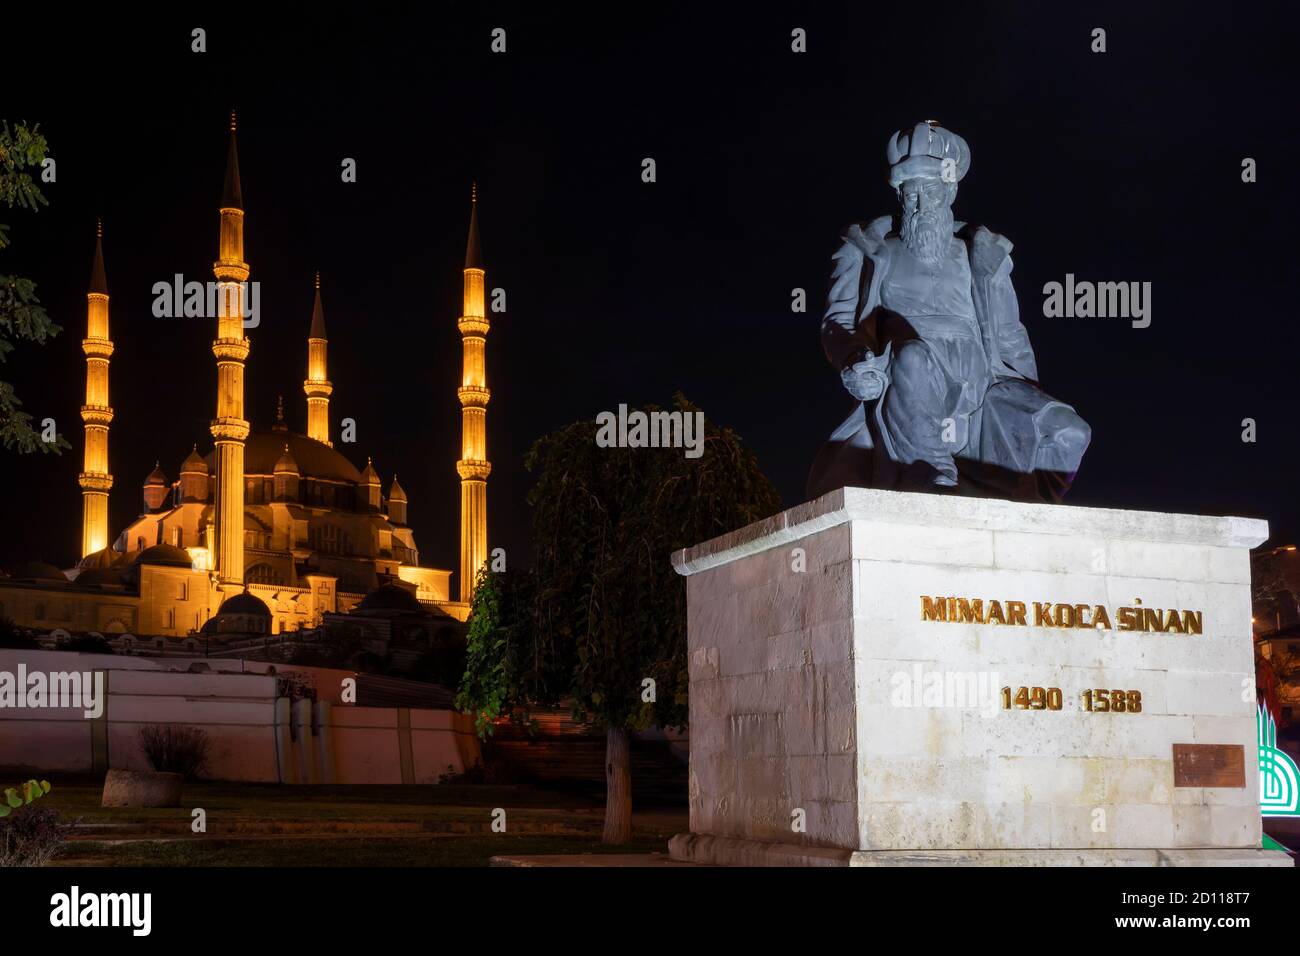 La mosquée Selimiye est une mosquée impériale ottomane, située dans la ville d'Edirne. Vue générale depuis la mosquée Selimiye avec monuments et statue Banque D'Images